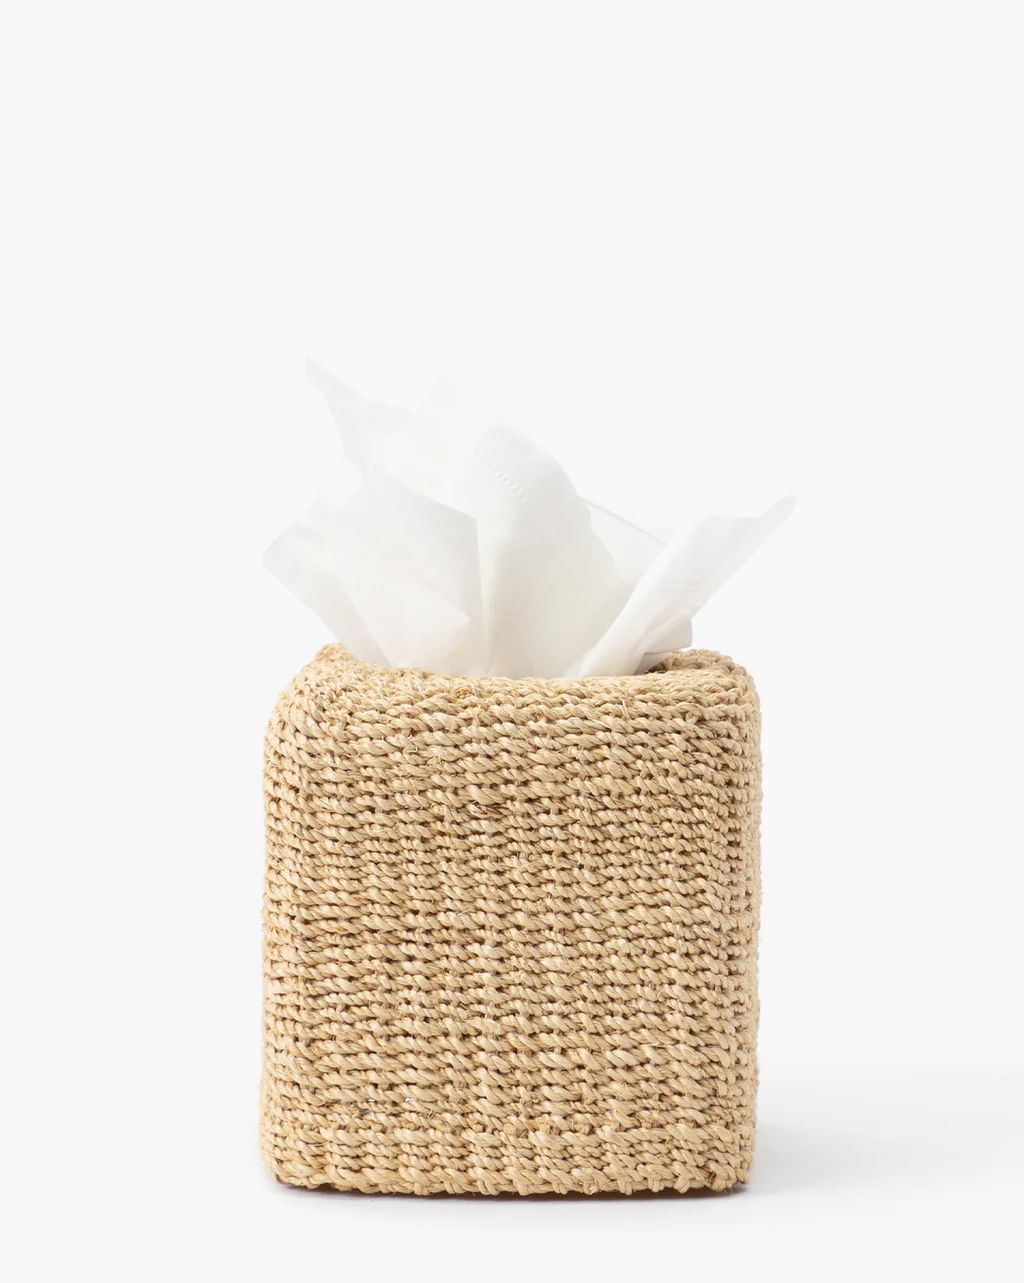 Woven Tissue Box | McGee & Co.